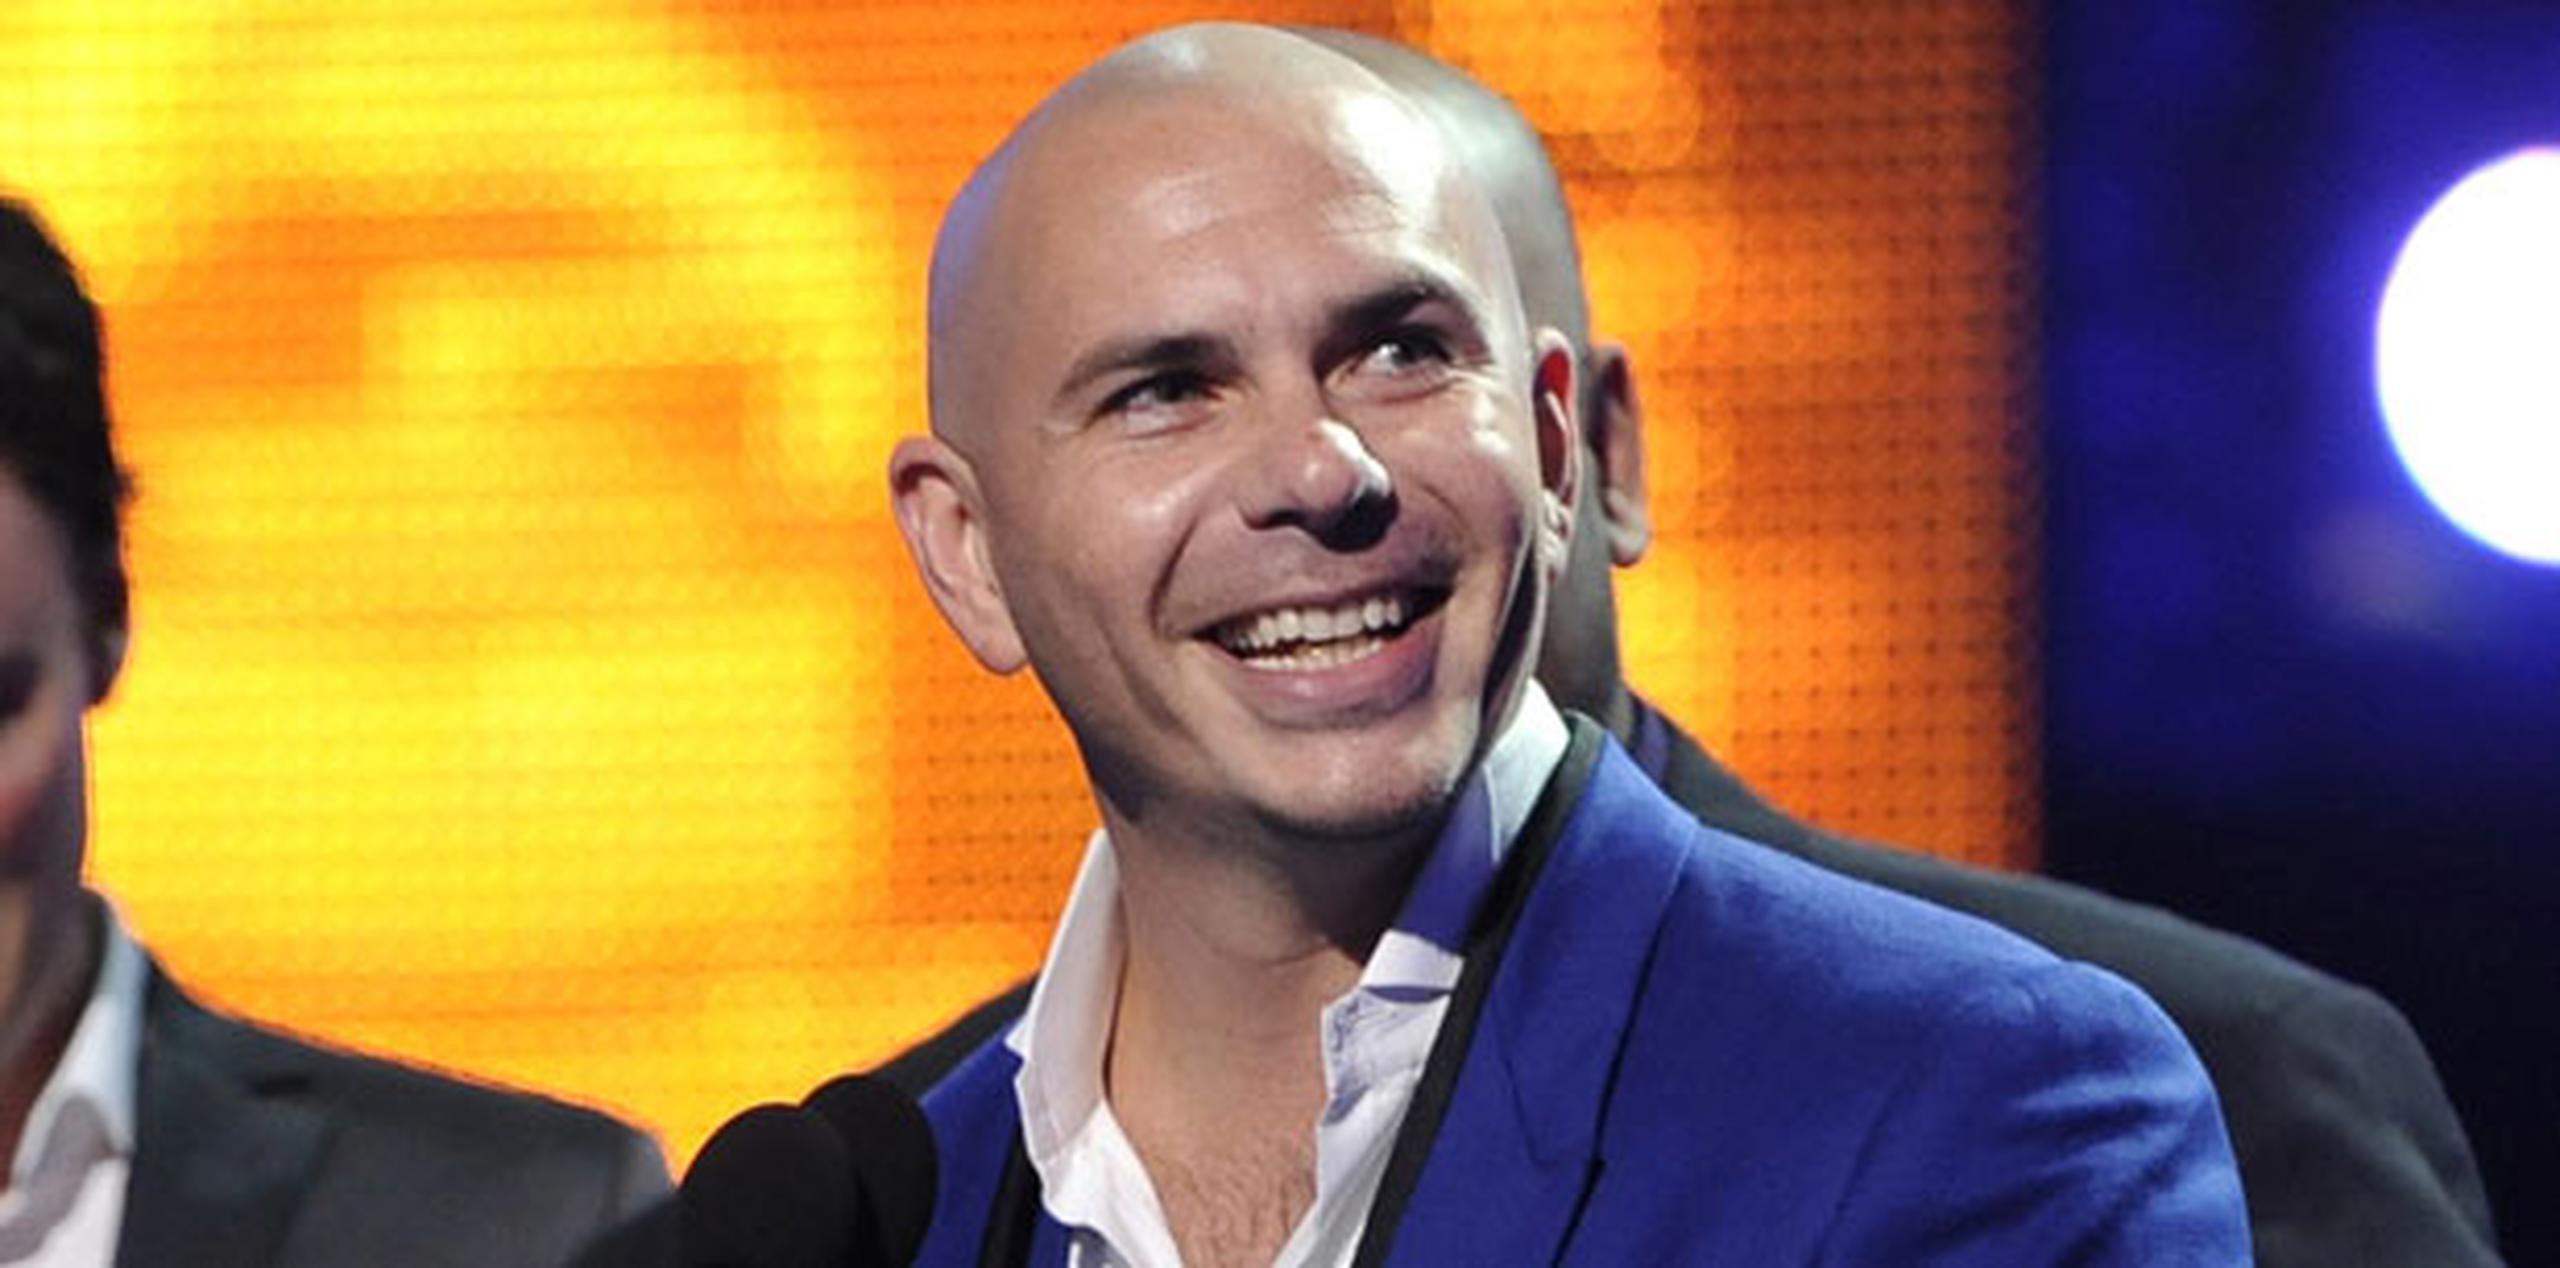 Pitbull ha encabezado las listas de popularidad en más de 15 países con temas como "Timber", que grabó a dúo con Kesha. (Archivo AP / Chris Pizzello/Invision